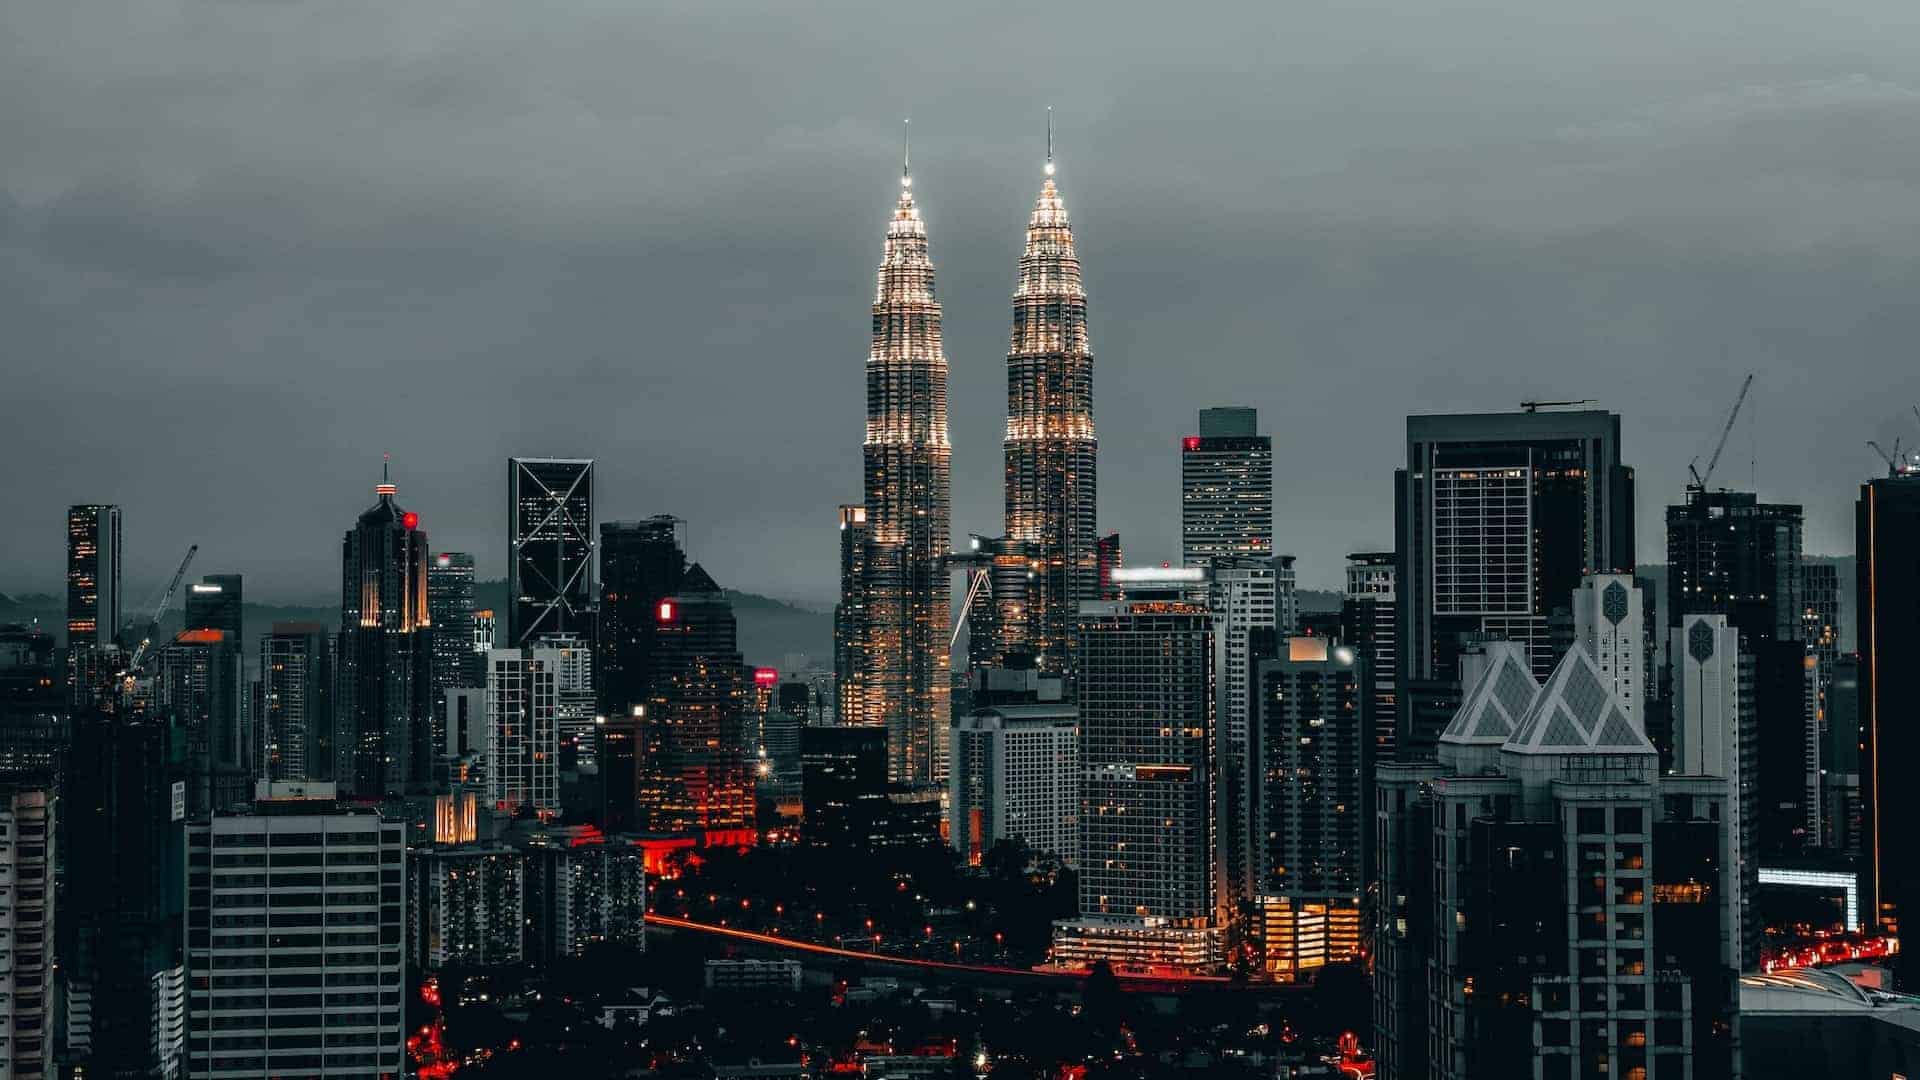 Kuala Lumpur towers at night, Malaysia